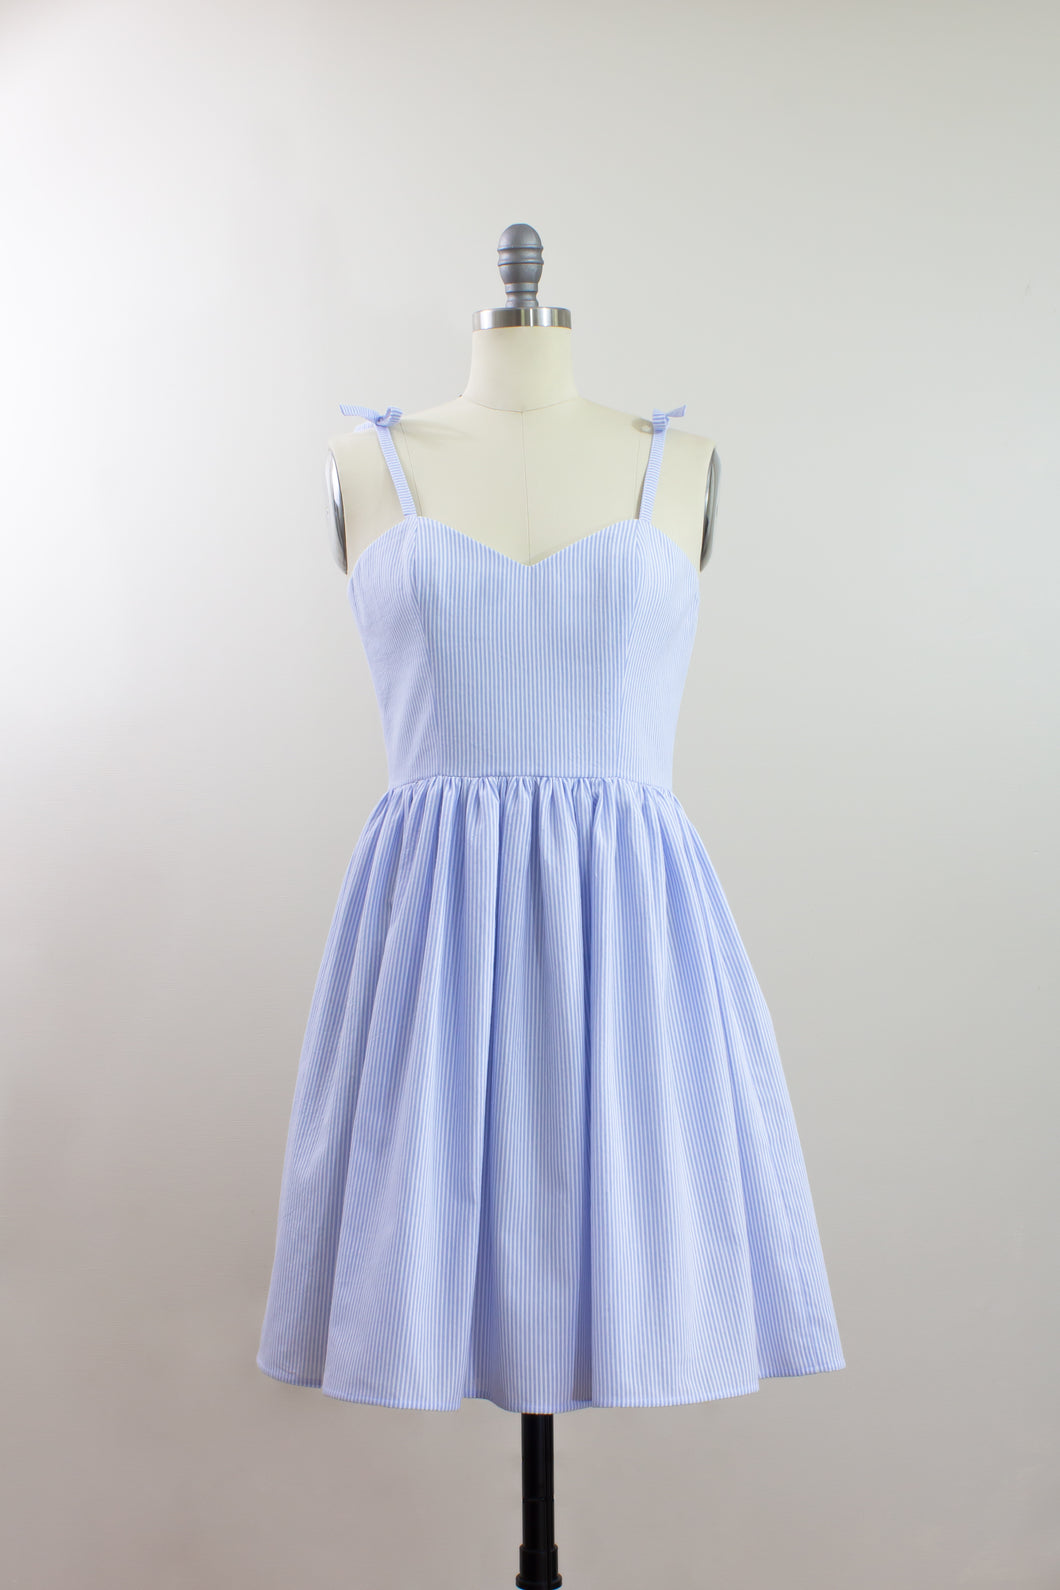 Elisabetta Bellu Dahlia cotton seersucker gathered skirt summer dress front